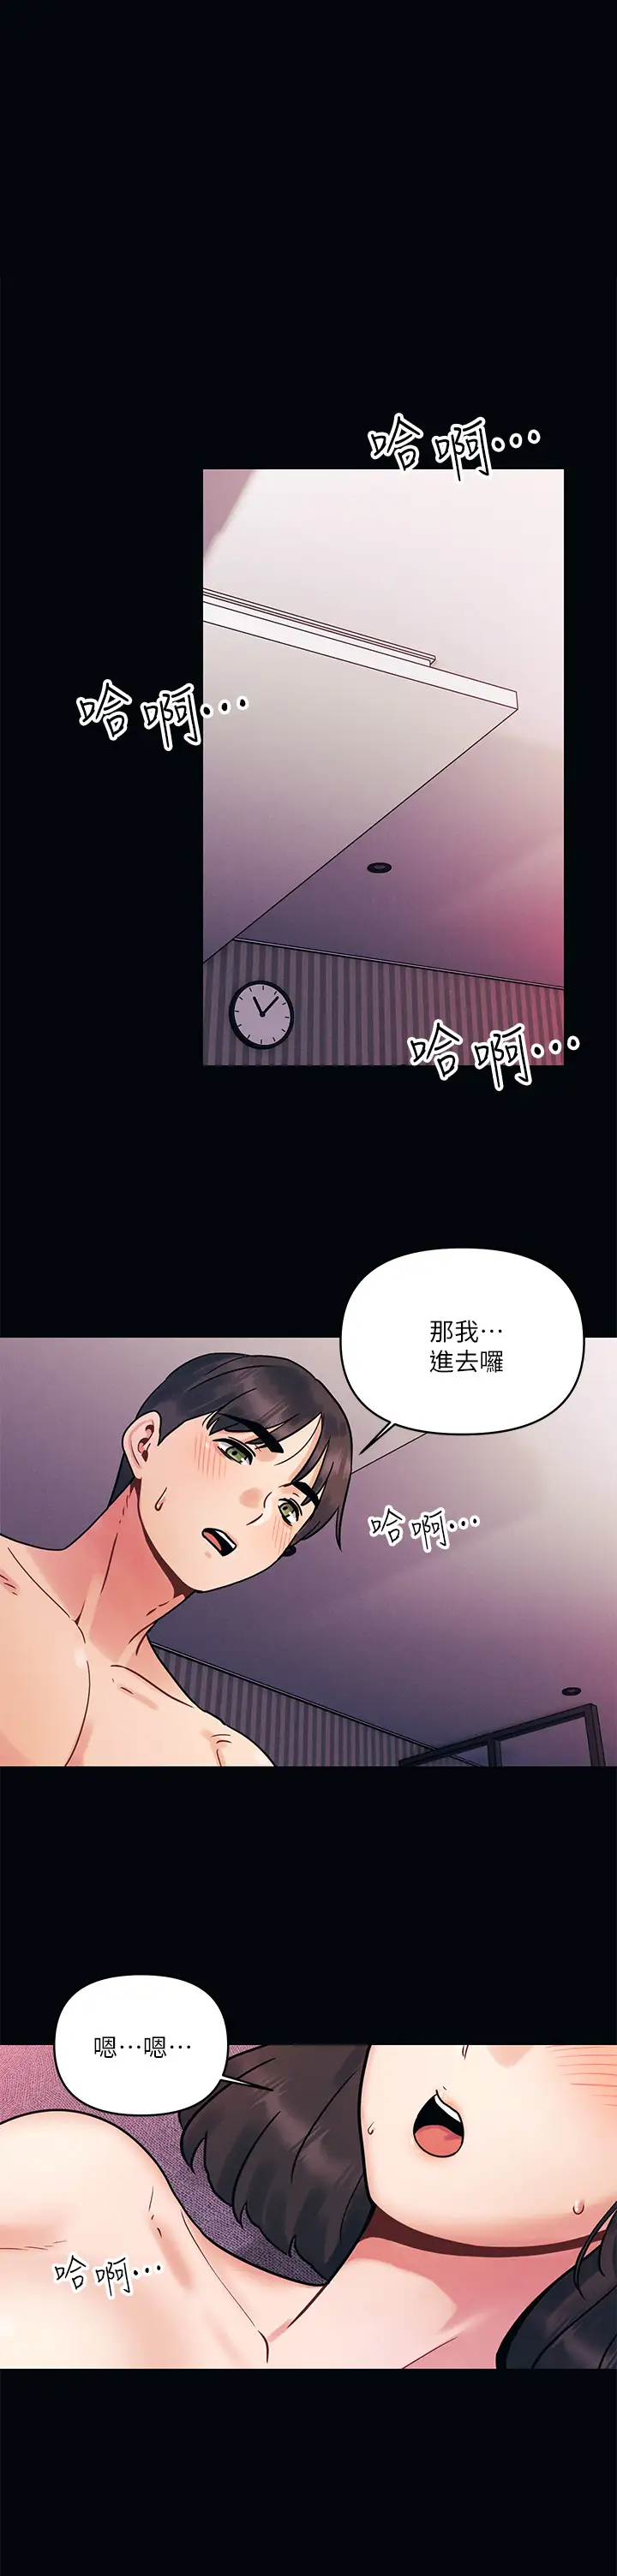 韩国污漫画 今晚是第一次 第2话我是…第一次 1